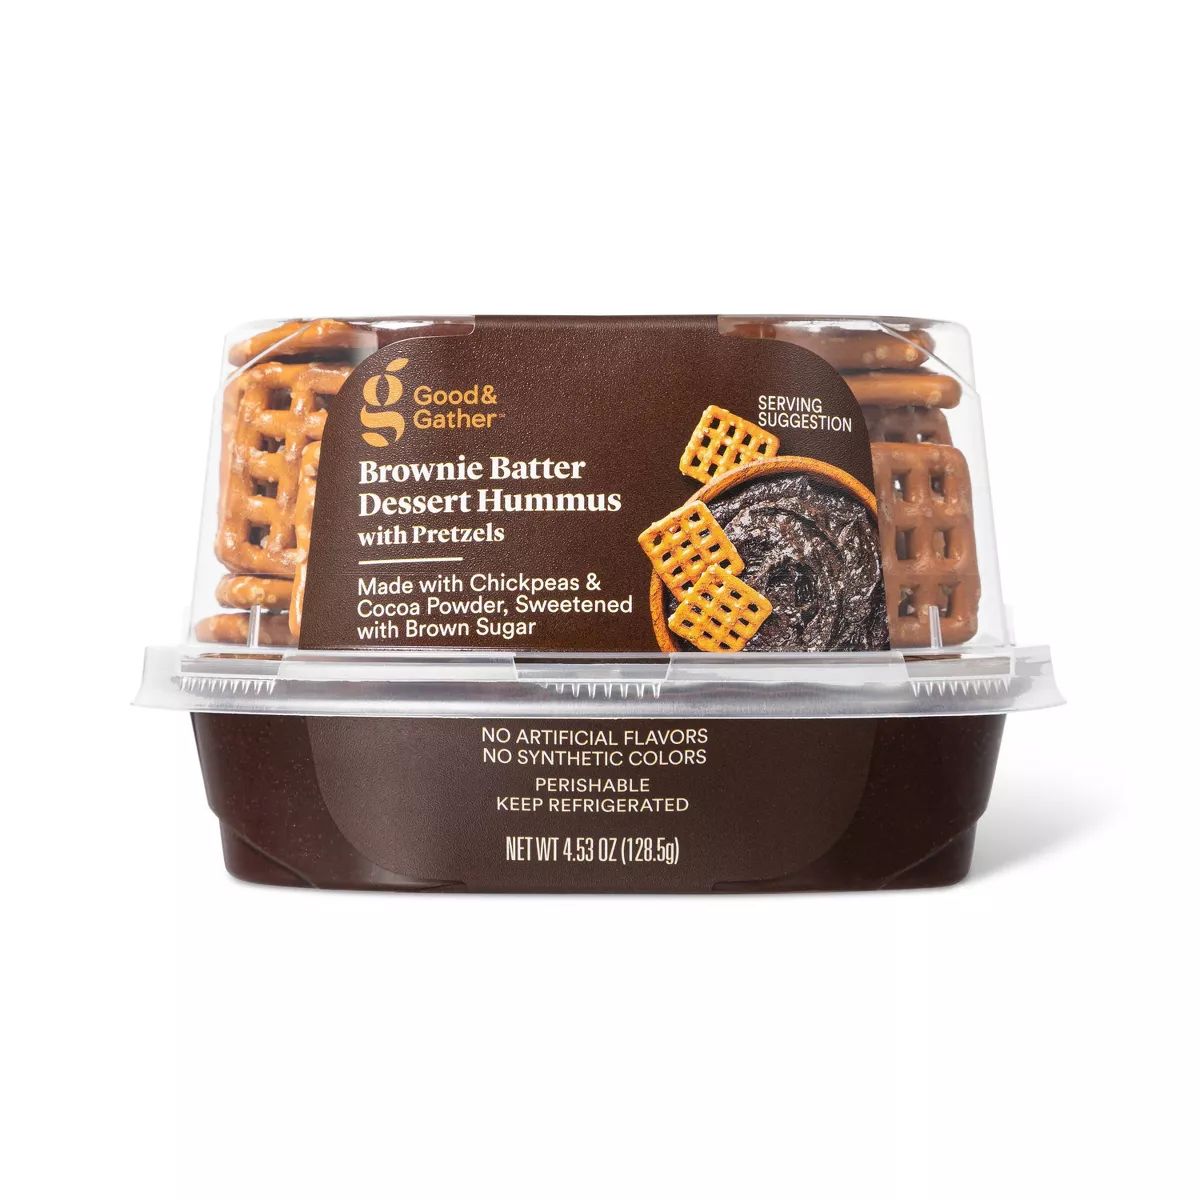 Brownie Batter Dessert Hummus with Pretzels - 4.53oz - Good & Gather™ | Target